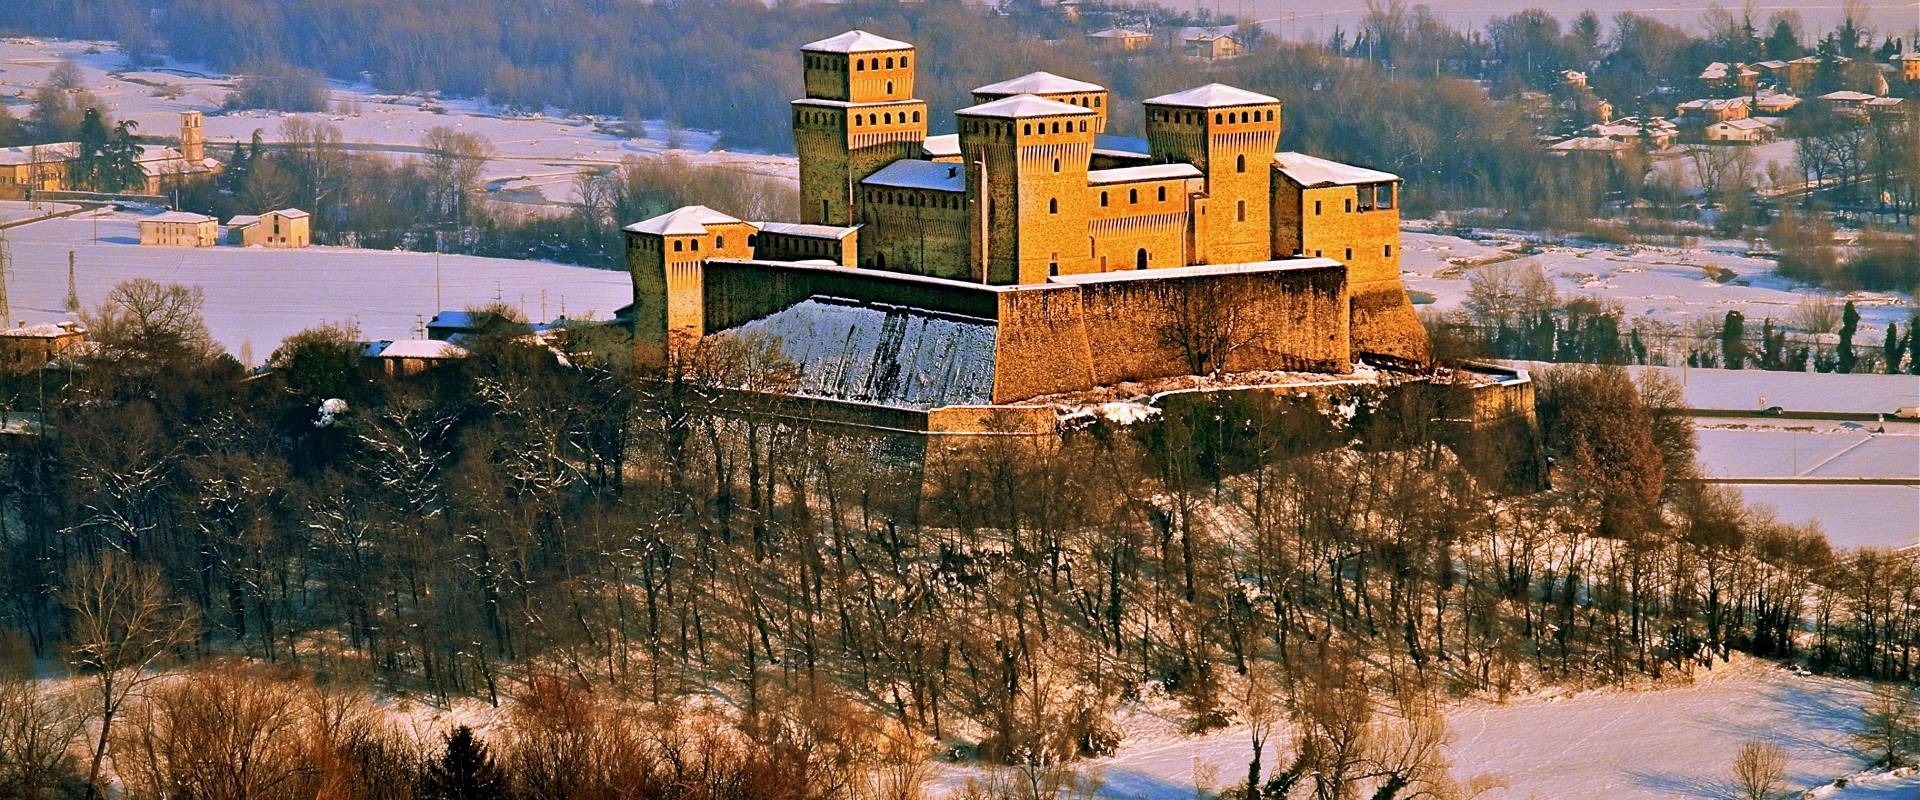 Castello di Torrechiara - Colline Parmensi photo by Caba2011